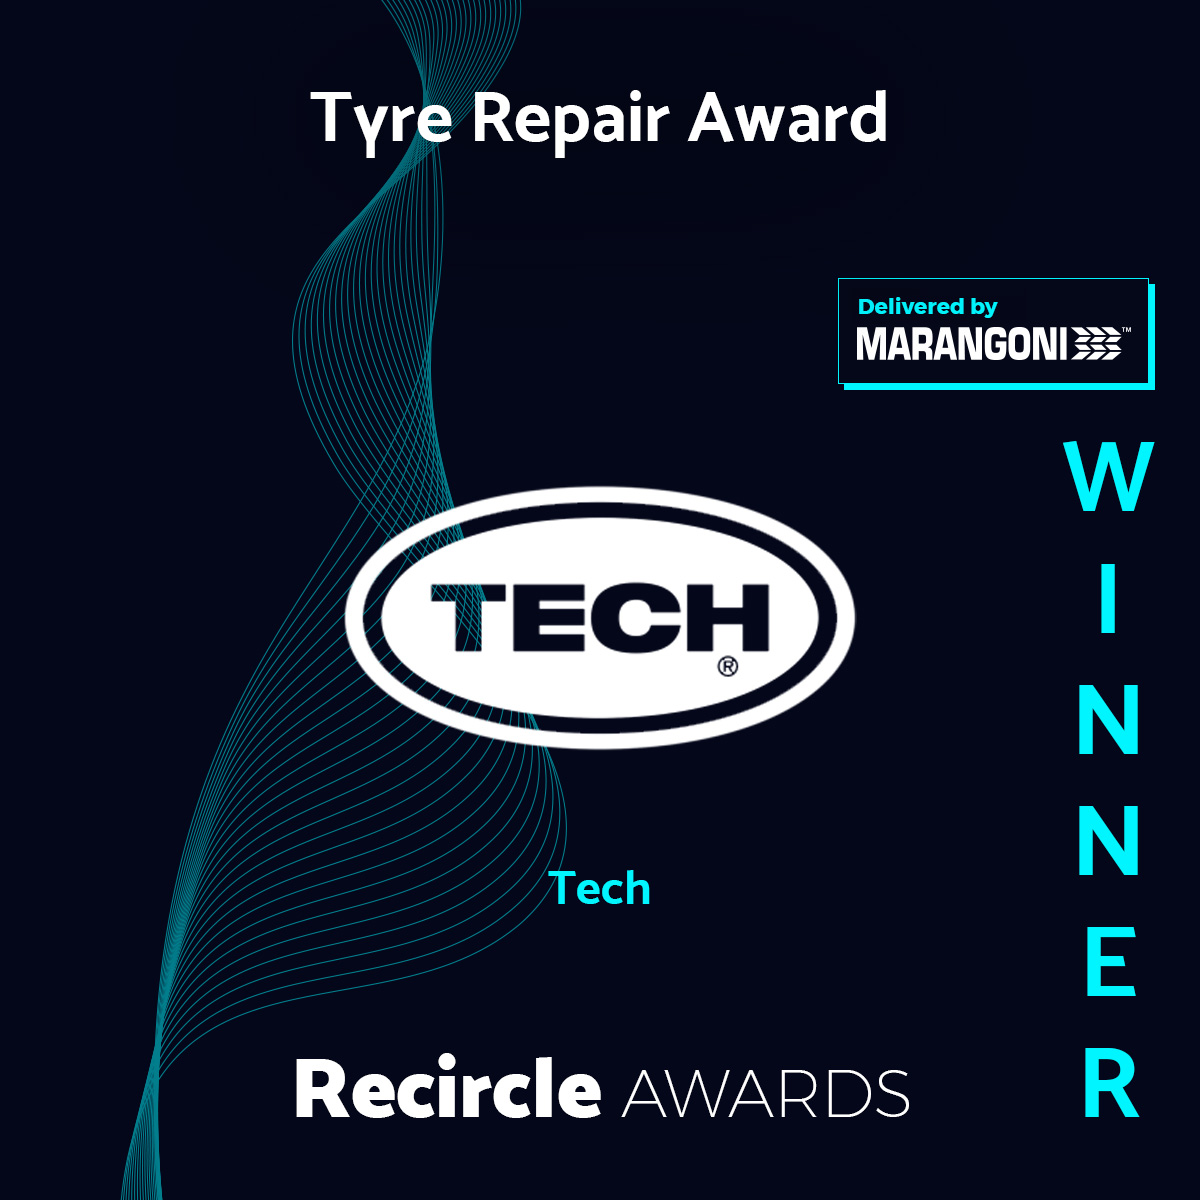 Tyre Repair Award 21